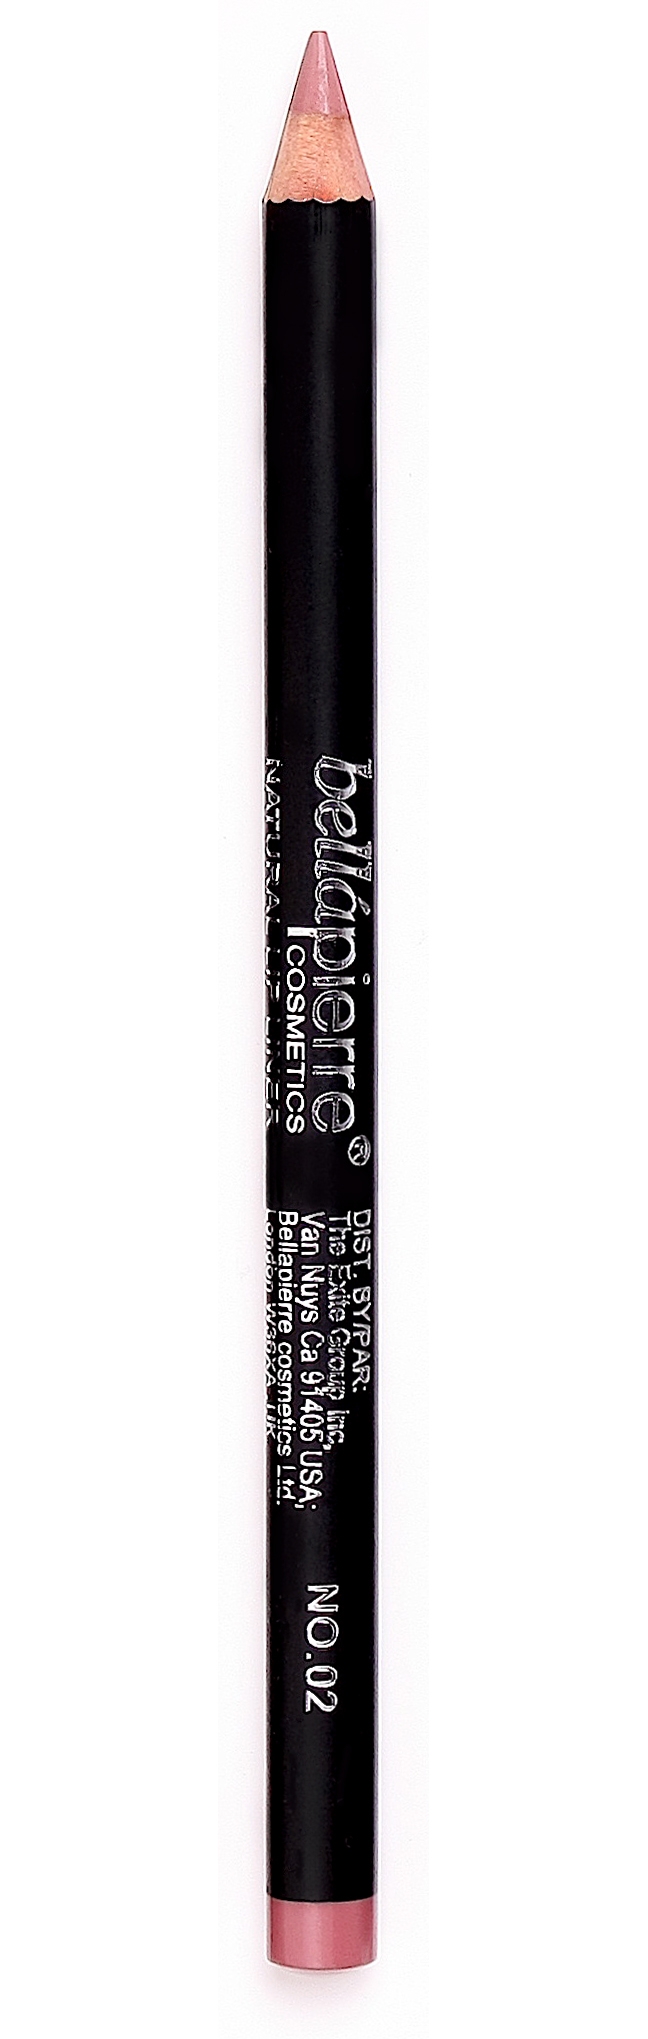 Bellapierre lip liner pencil 02 Nude